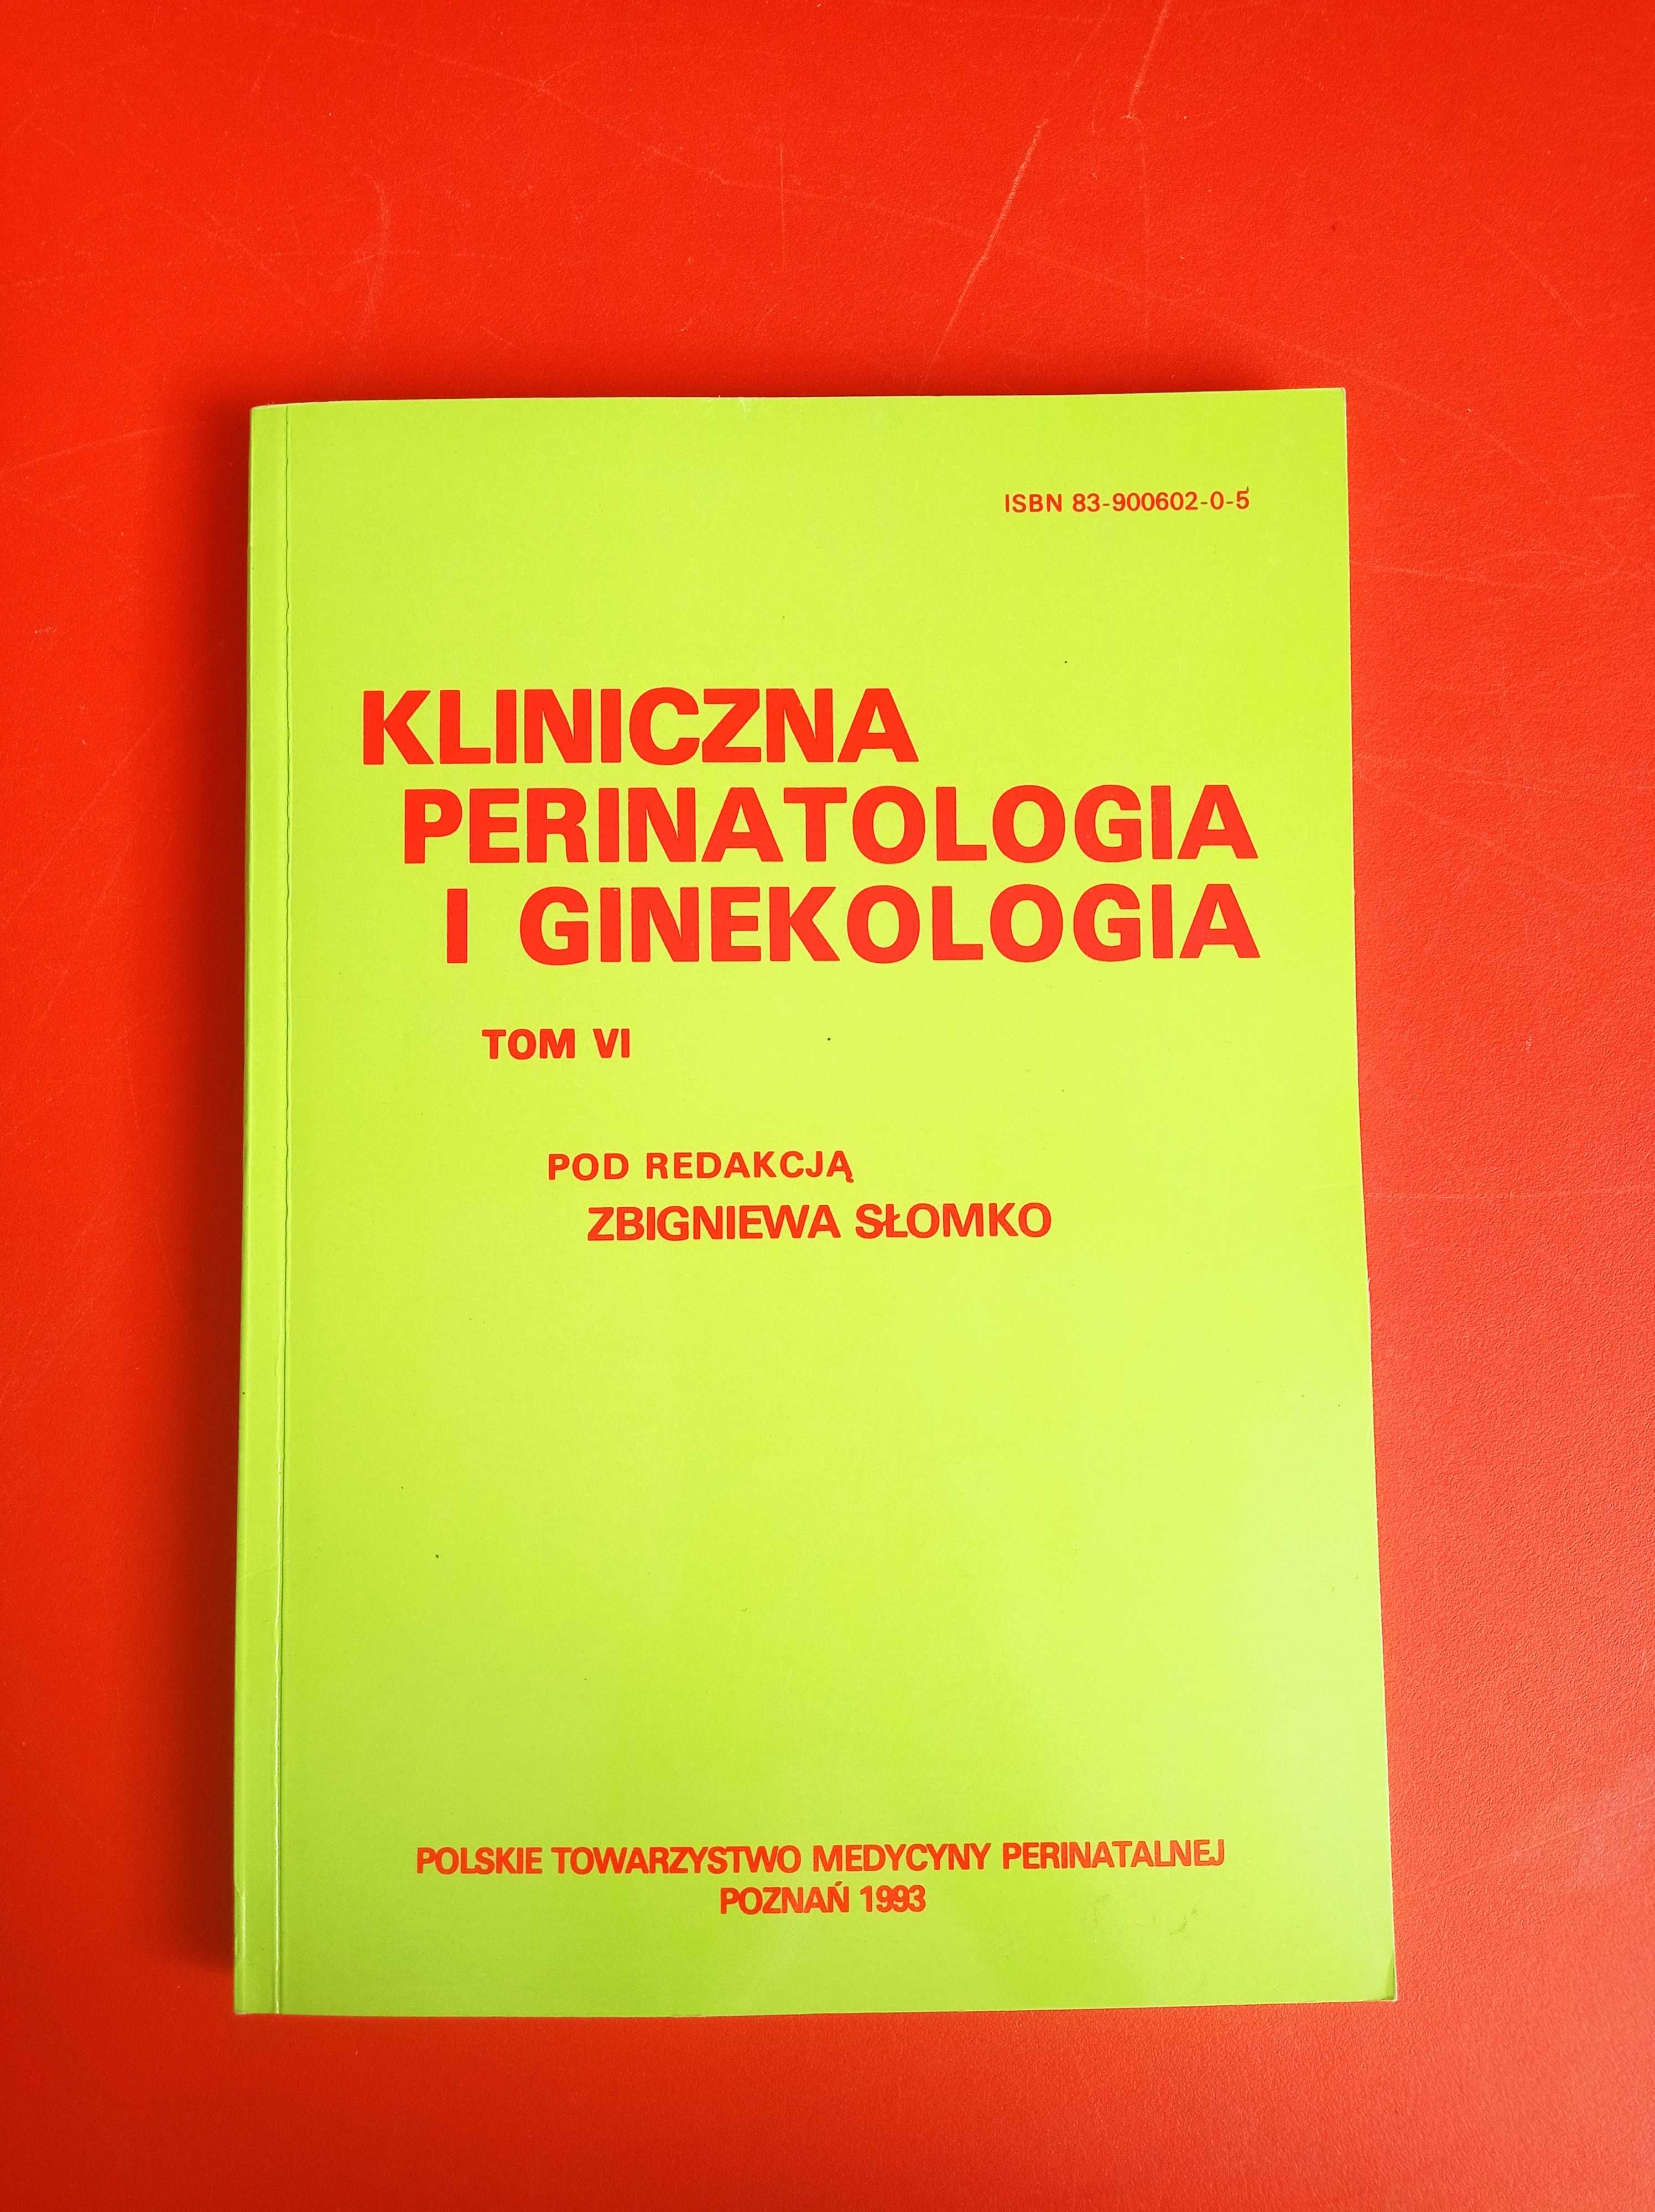 Kliniczna perinatologia i ginekologia, tom VI, Zbigniew Słomko